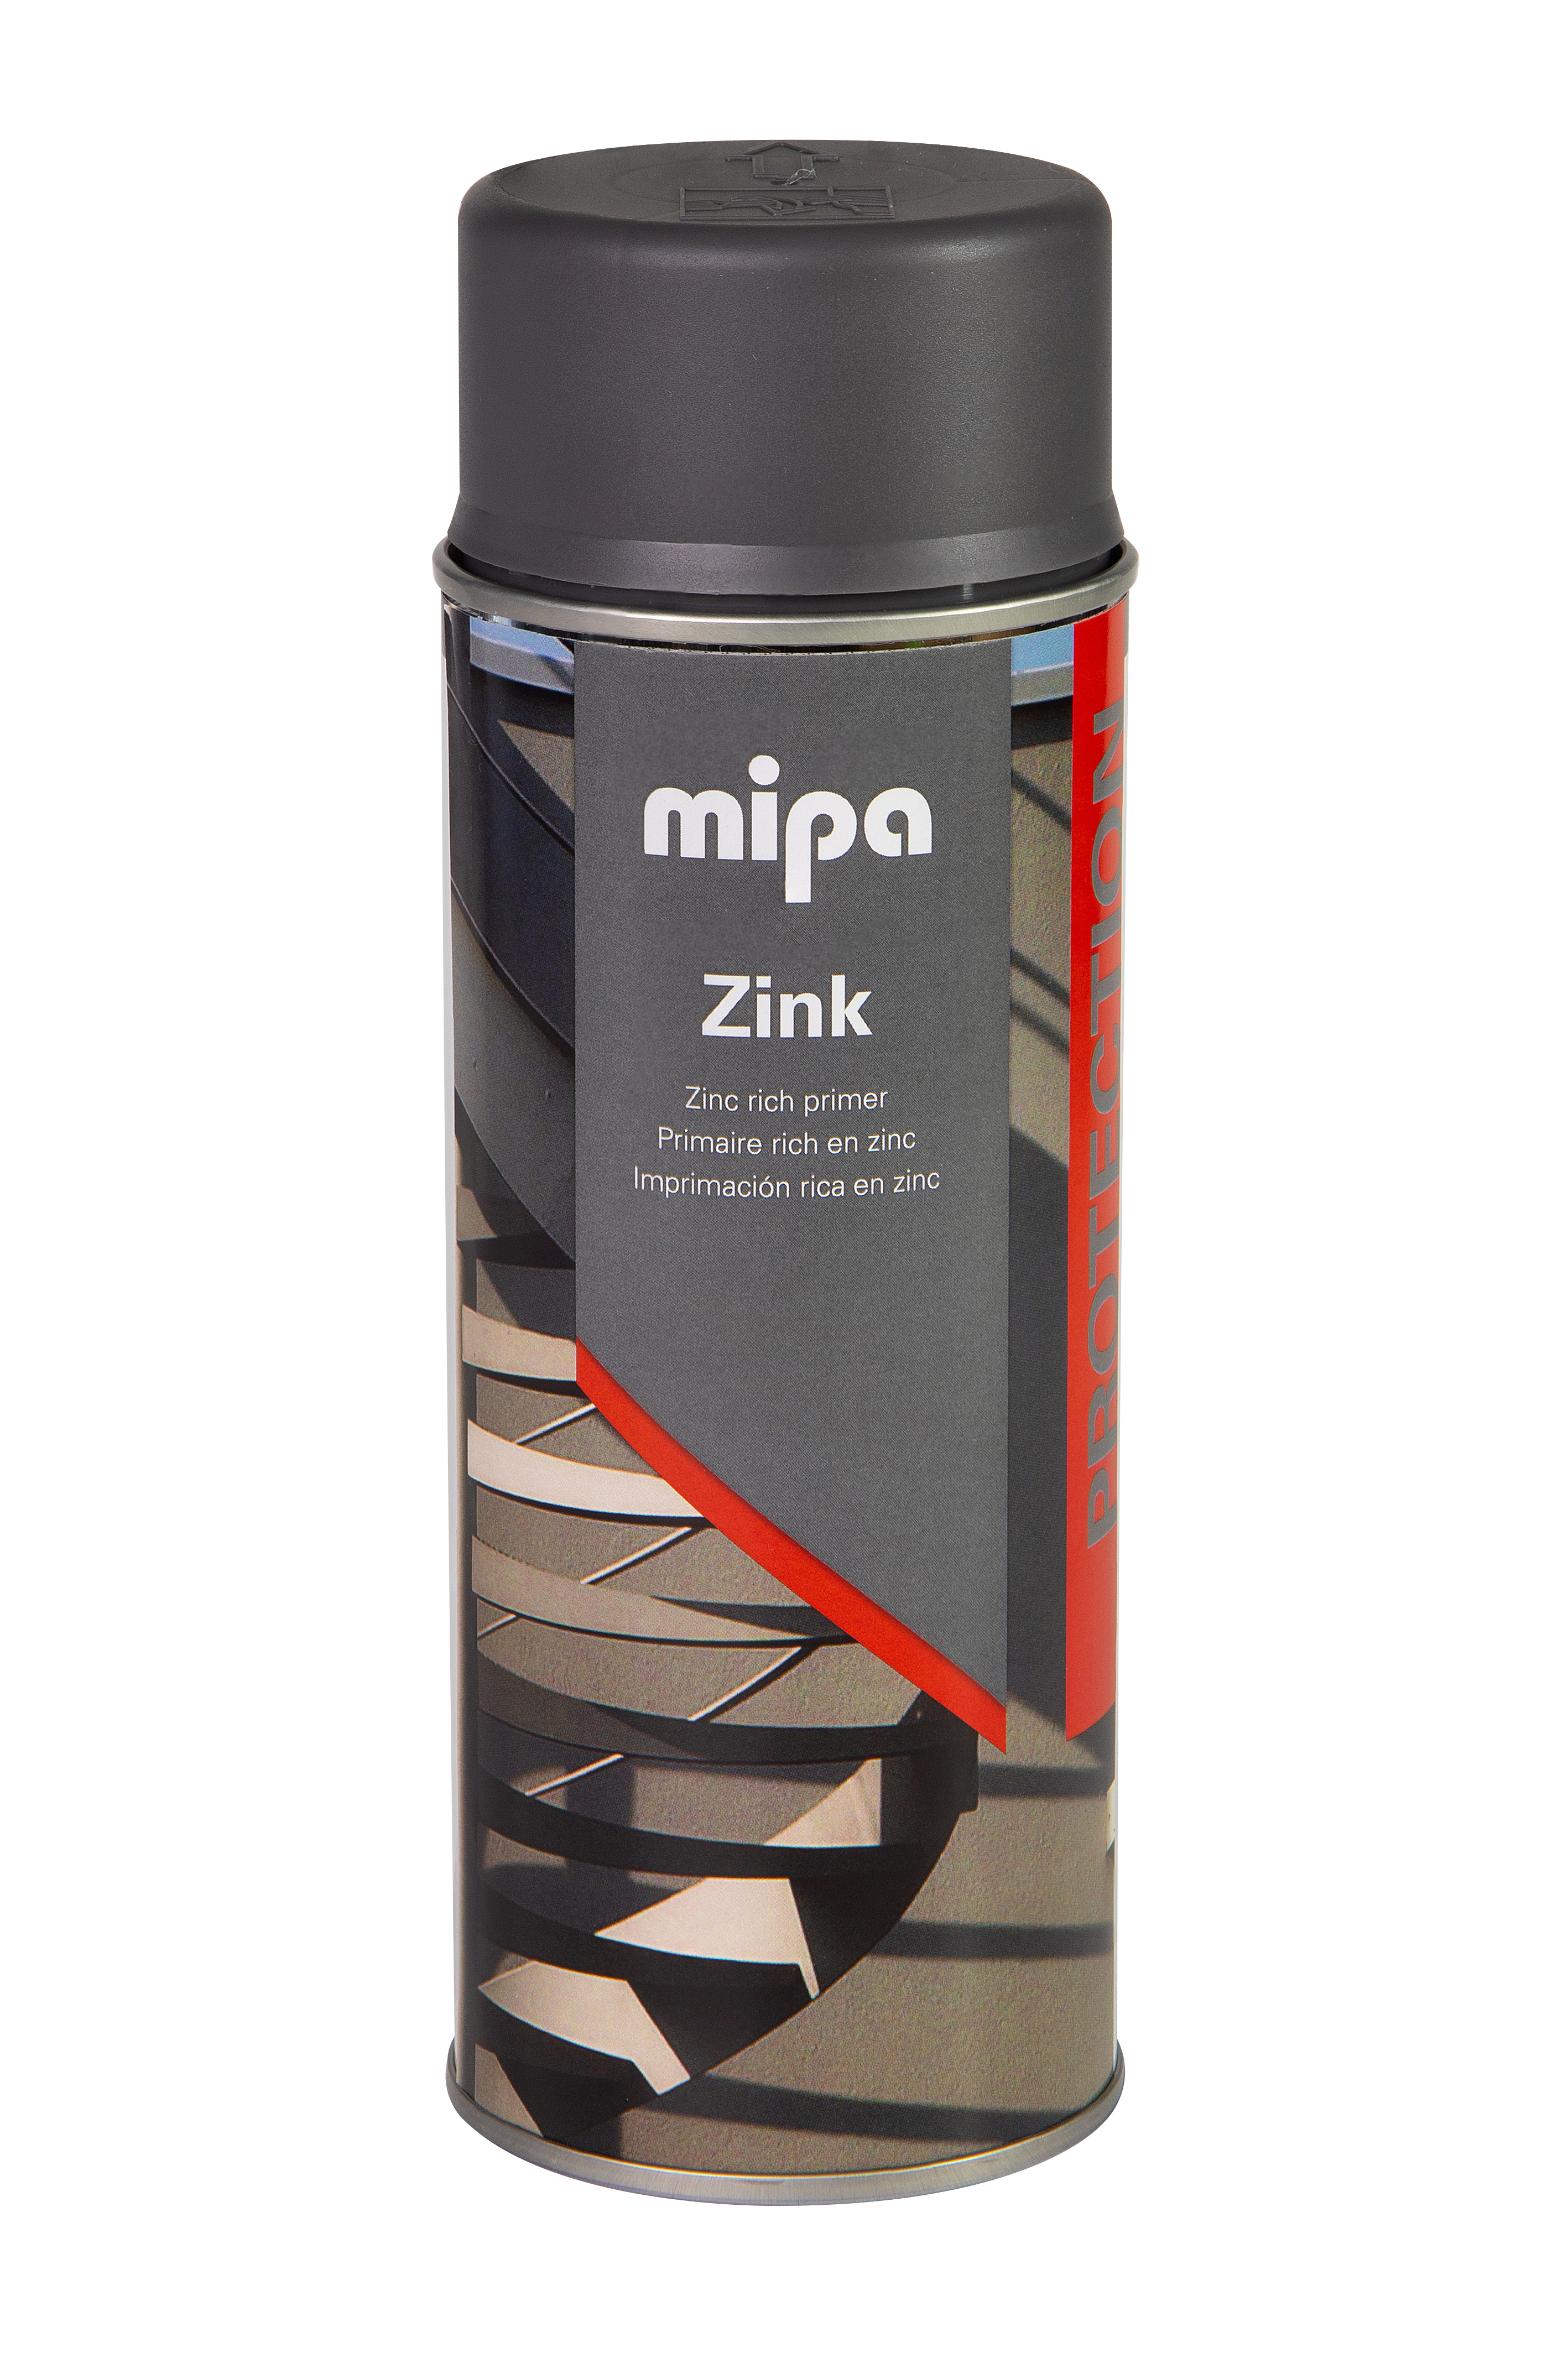 Mipa Steinschlagschutz Spray